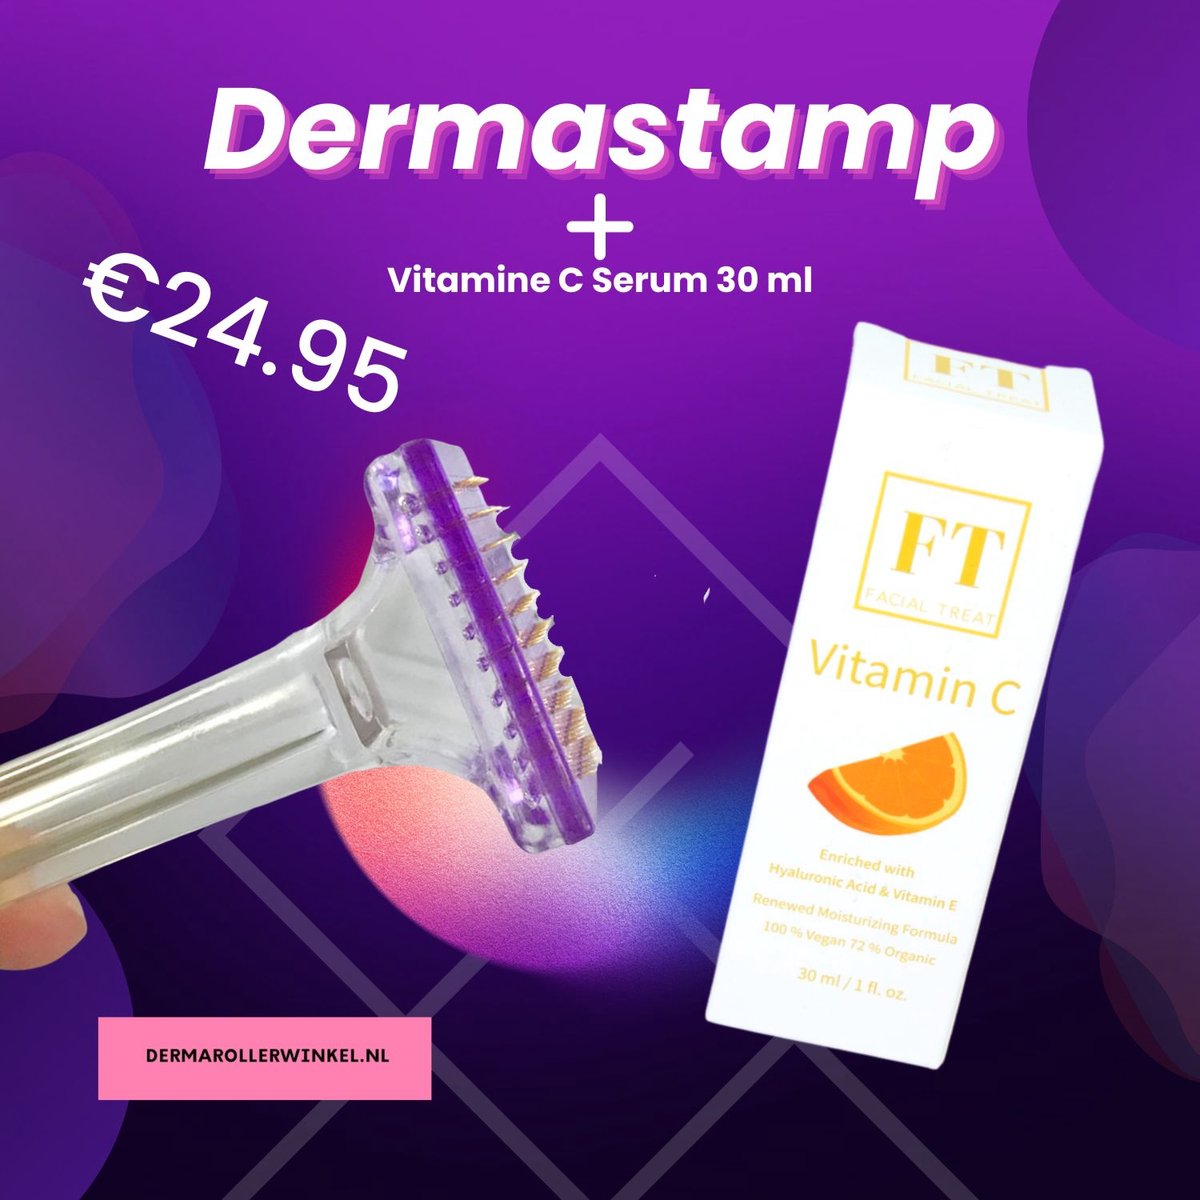 Dermastamp 1.0 mm + Vitamine C Serum 30 ml